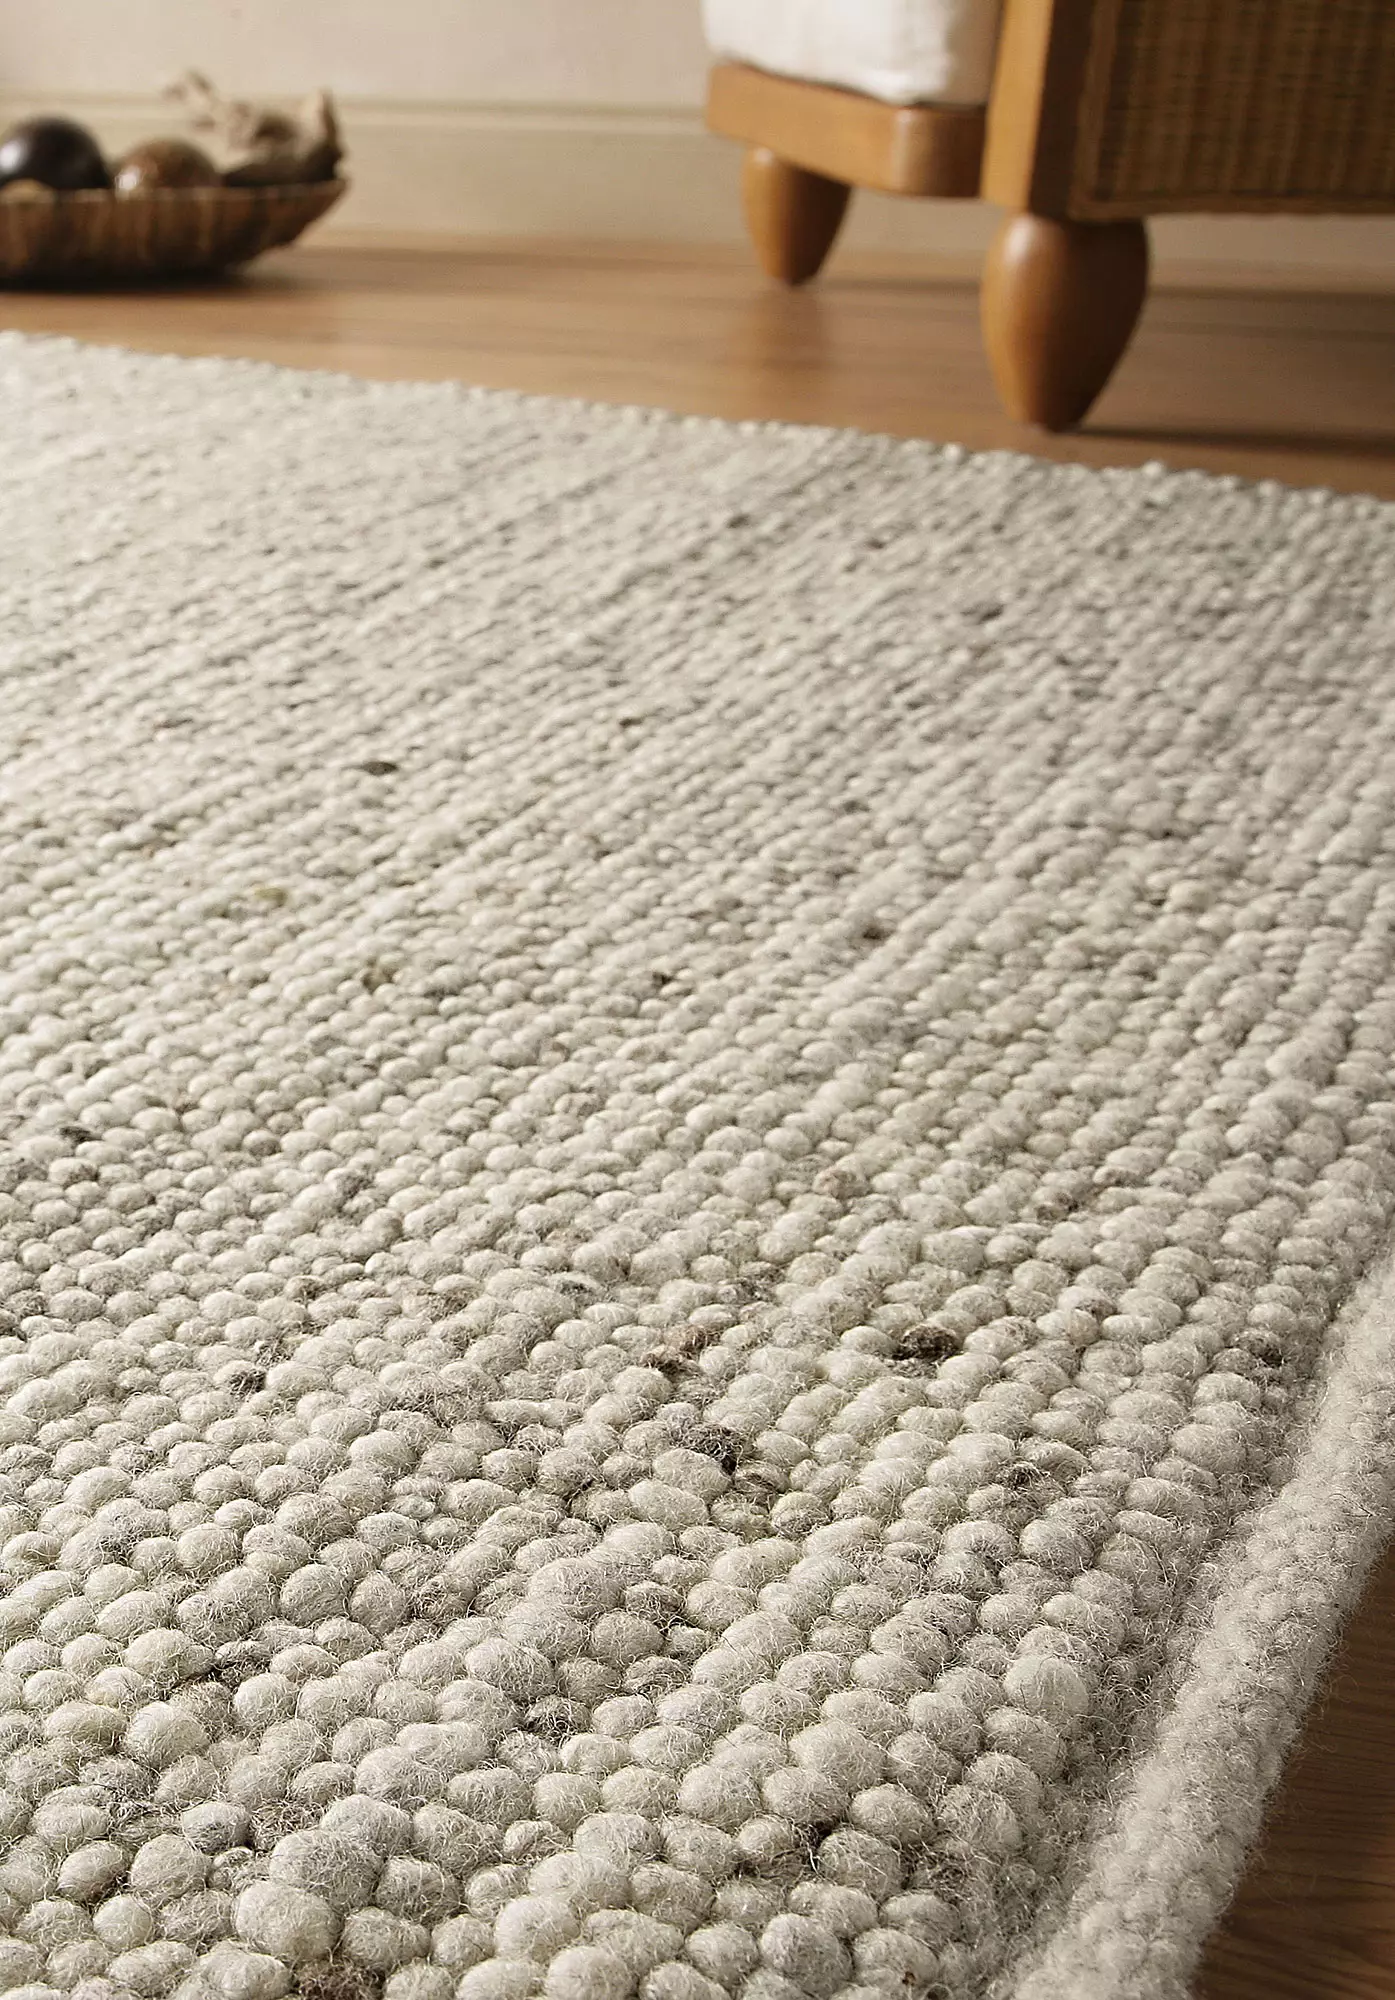 Rhönschaf woven carpet made from regional virgin wool - 0